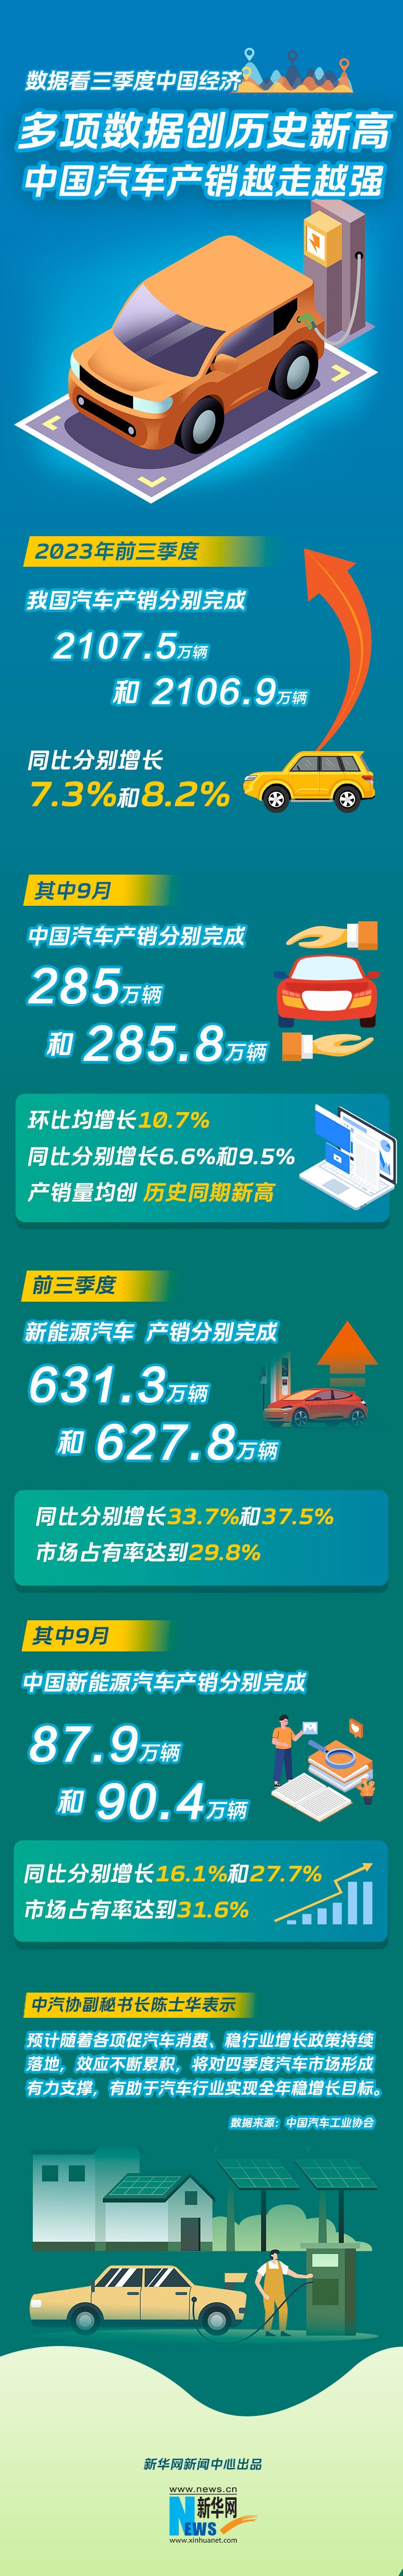 多项数据创历史新高——中国汽车产销越走越强